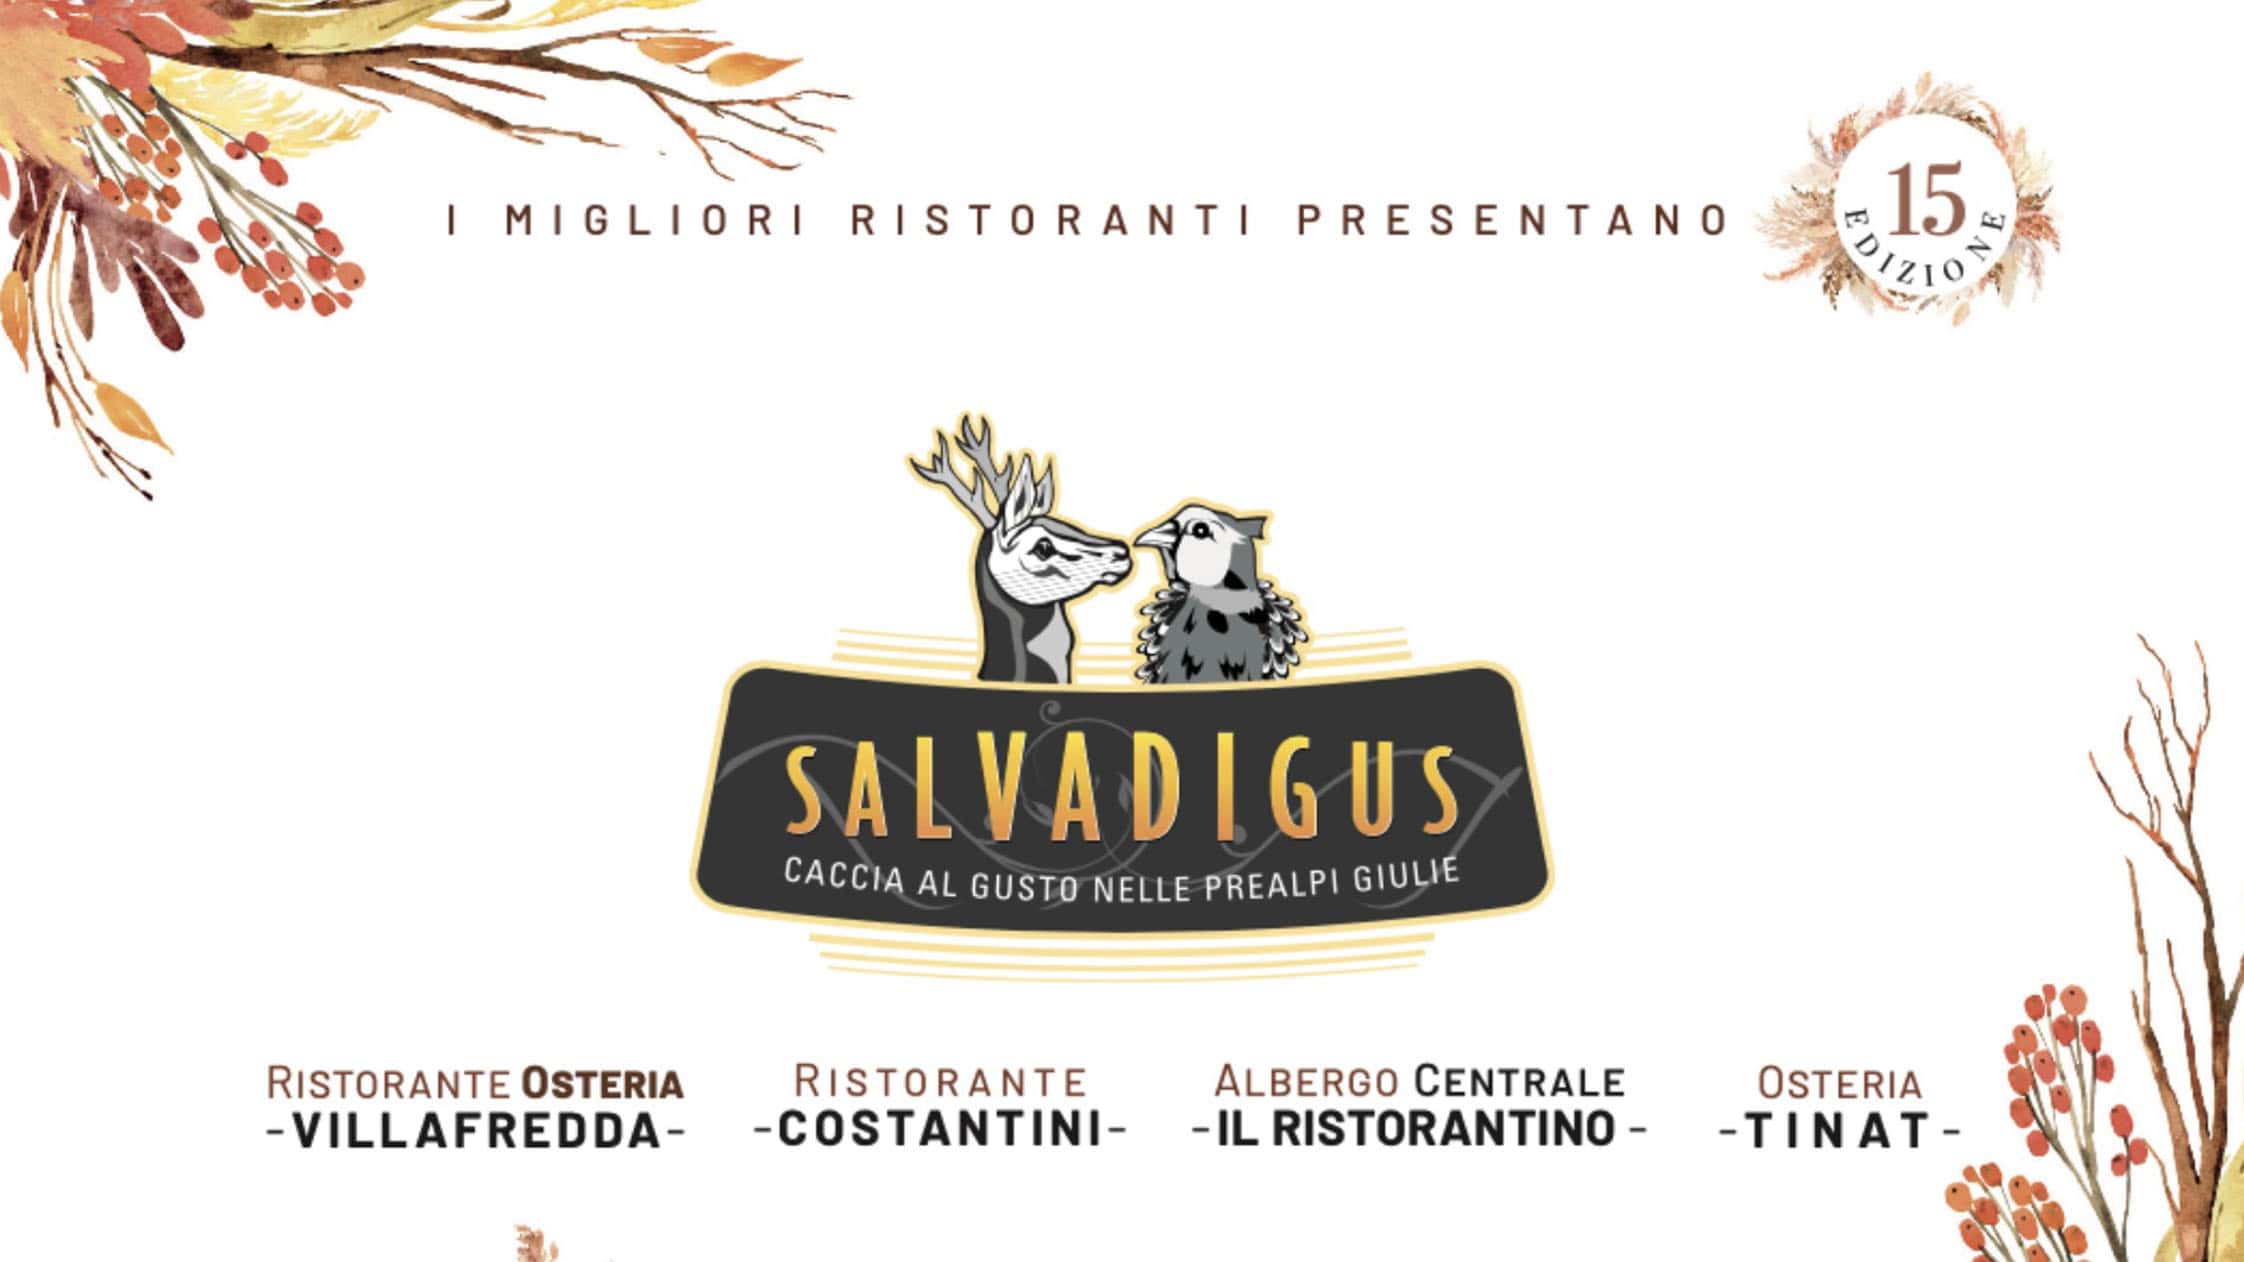 Tenimenti Civa alla 15^ edizione di Salvadigus, la gastronomia tarcentina incardinata sulla selvaggina